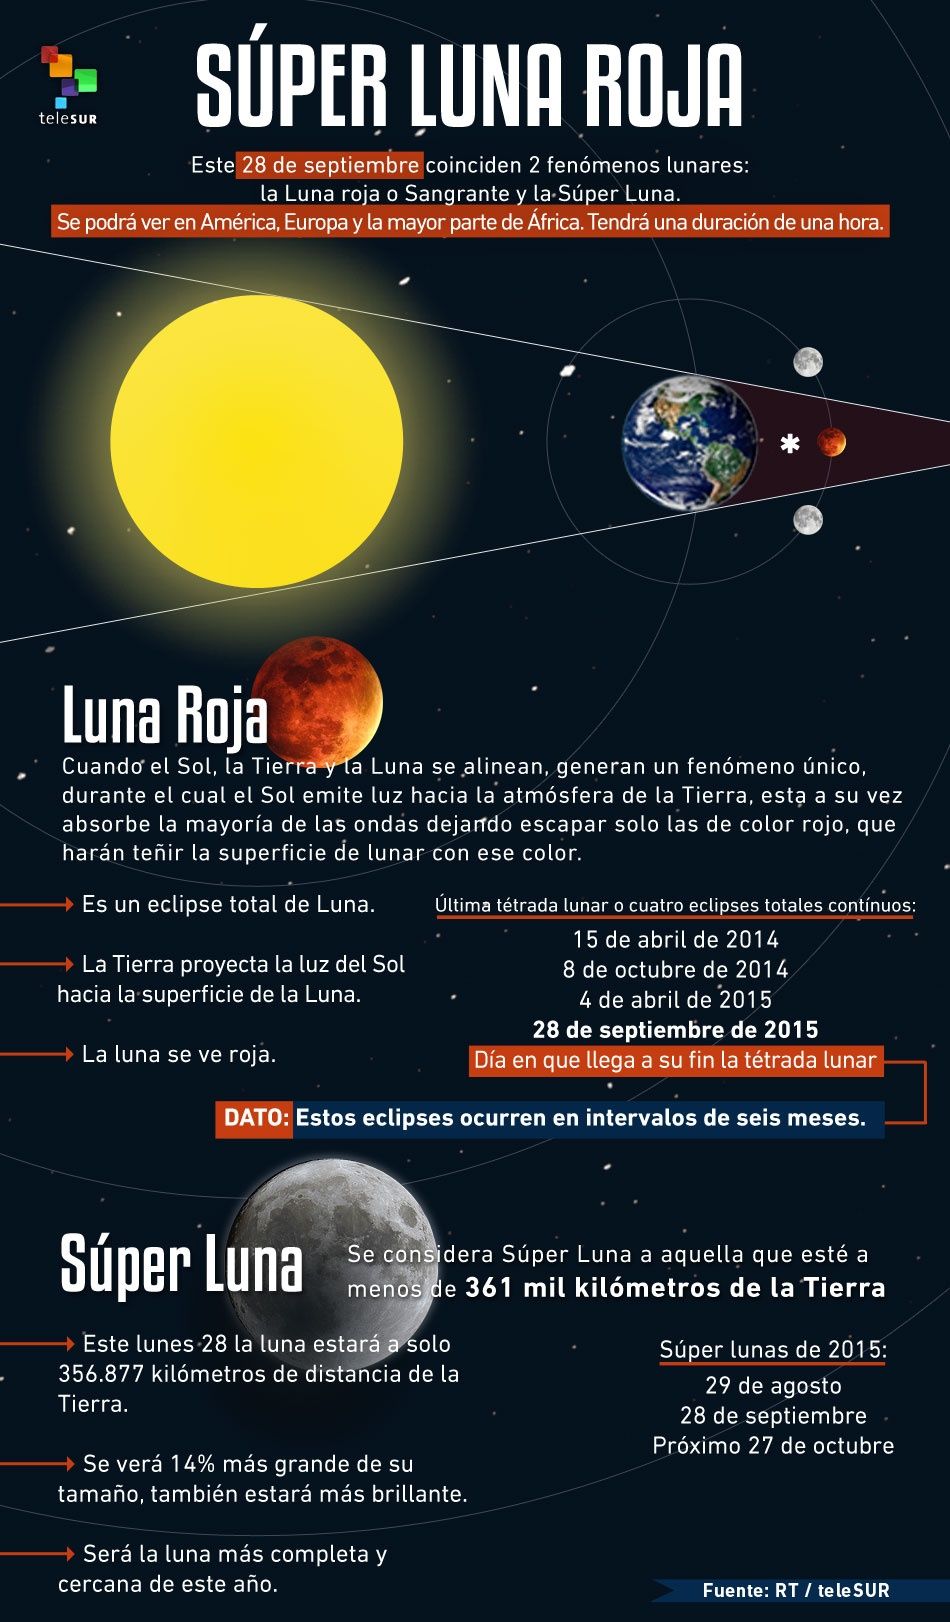 Súper Luna Roja